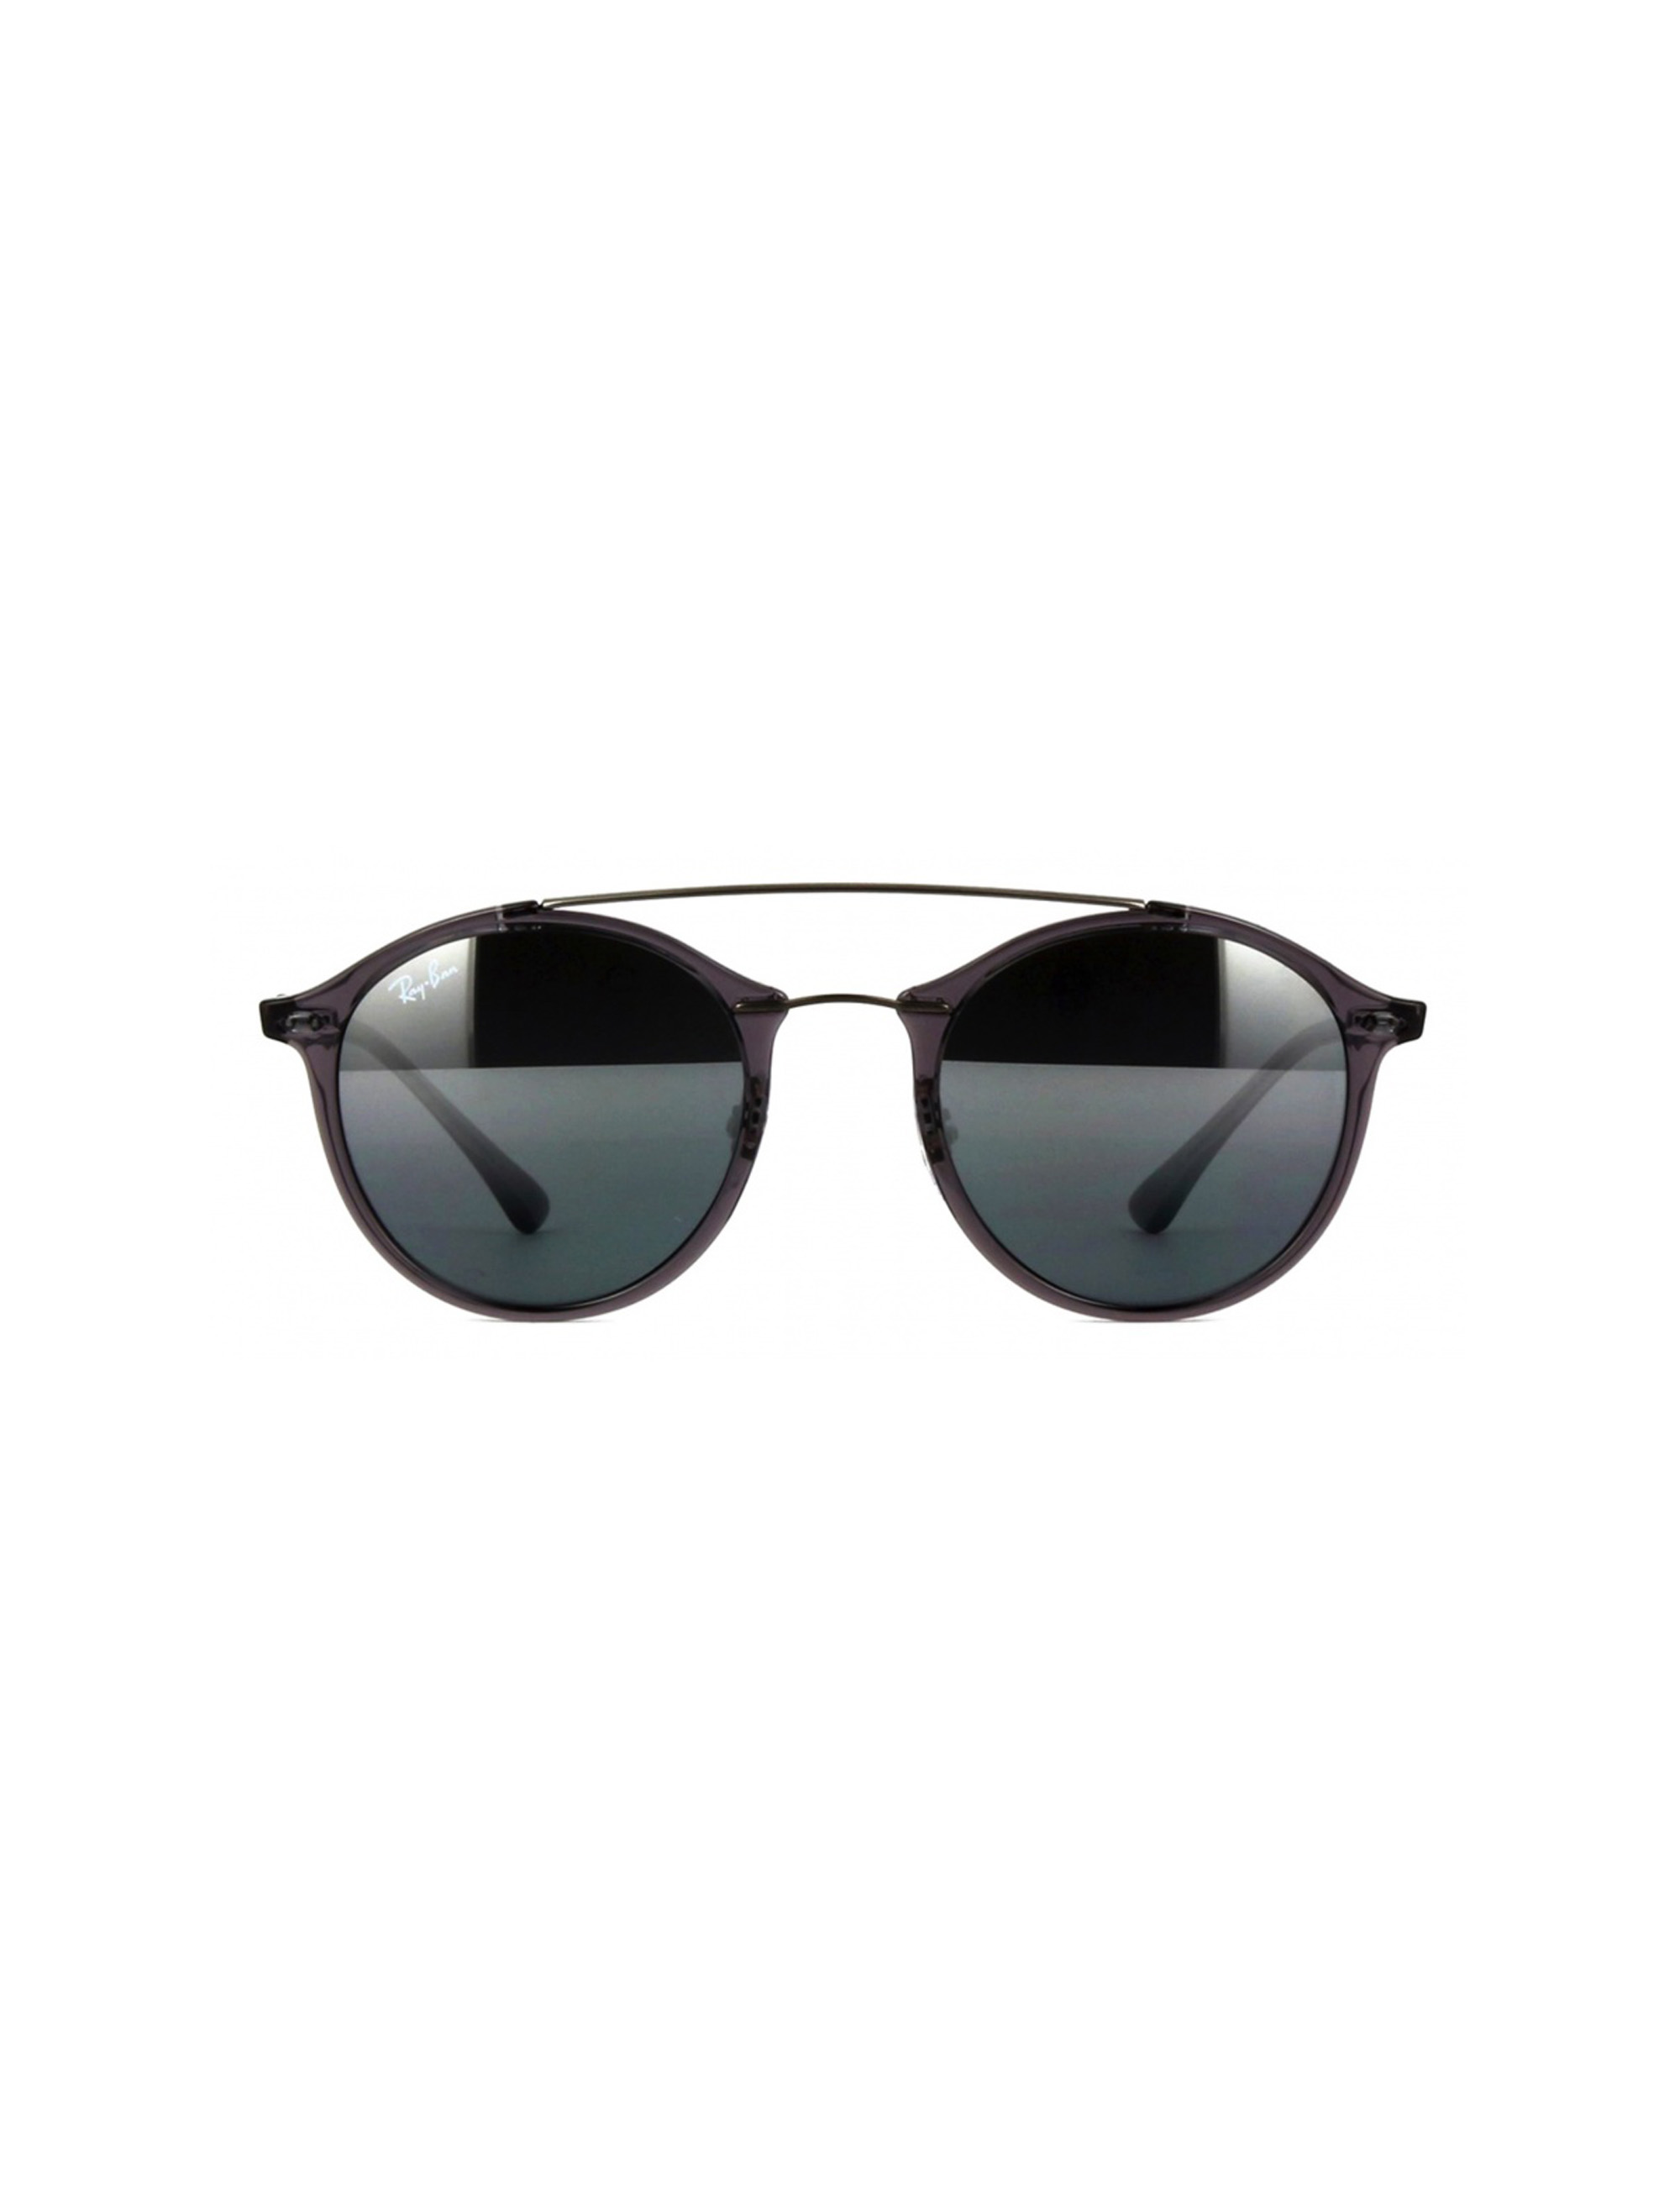 عینک آفتابی مردانه ری بن مدل 4266-6200/88